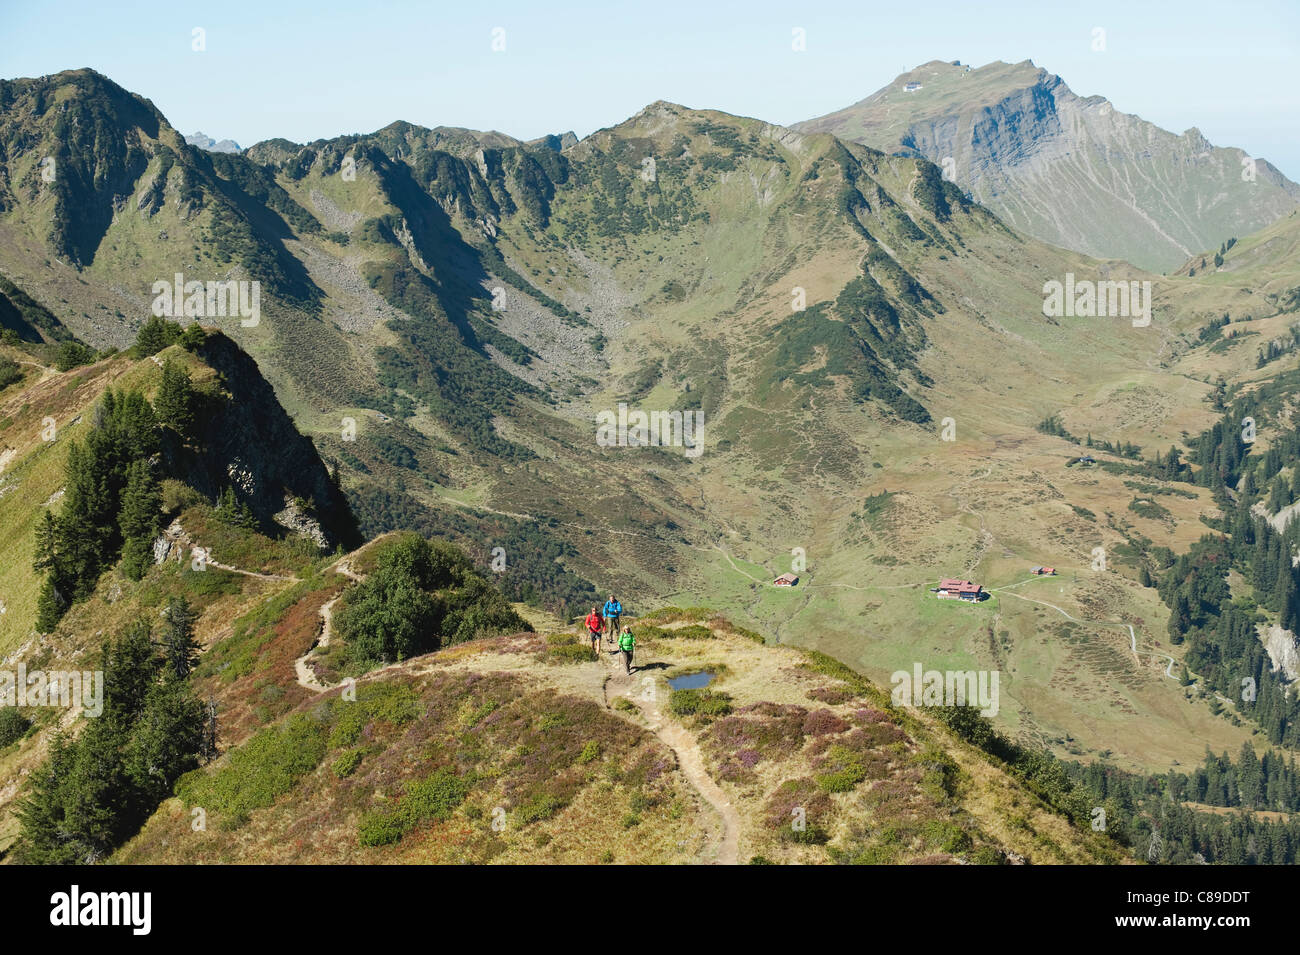 Austria, Kleinwalsertal, Group of people hiking on mountain trail Stock Photo